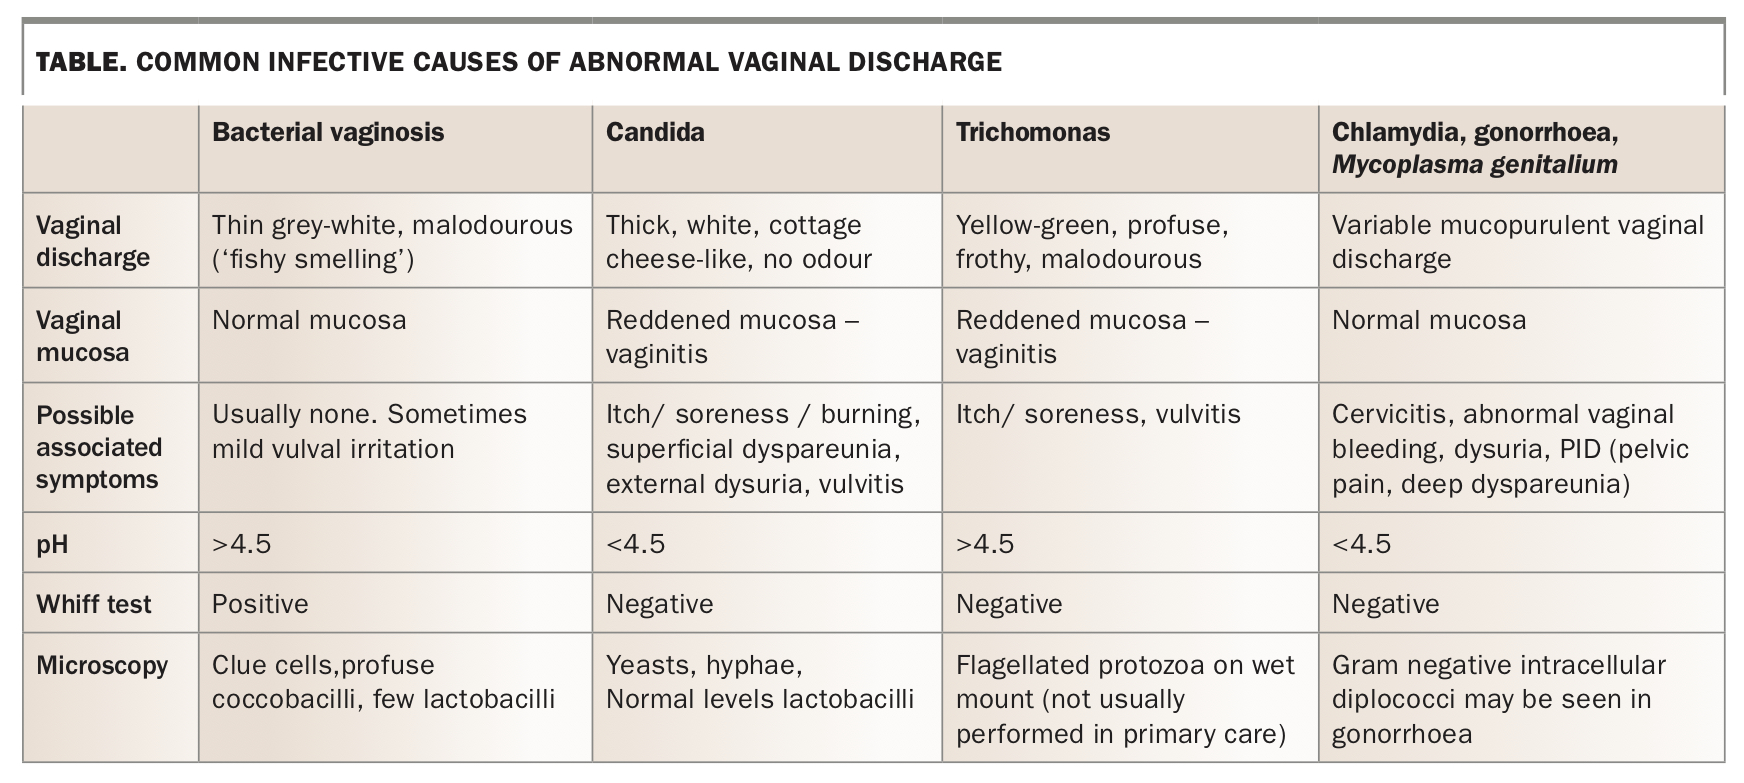 Abnormal vaginal discharge etiopathogenesis